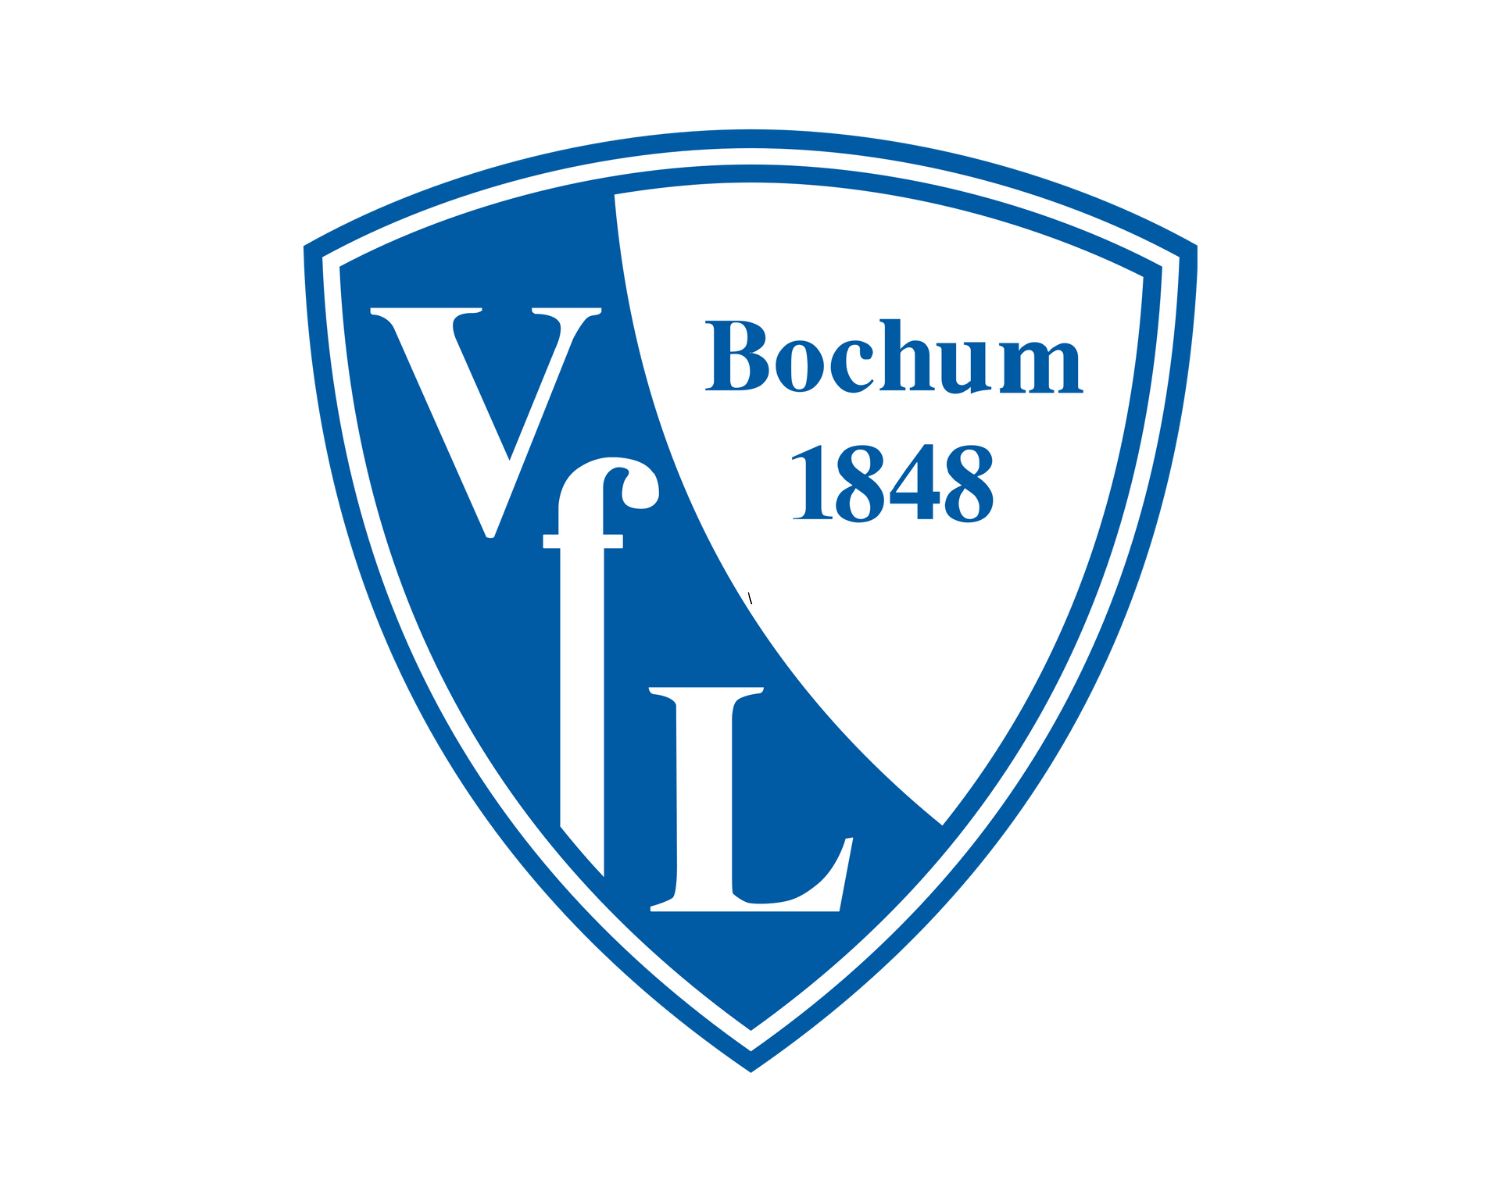 vfl-bochum-23-football-club-facts